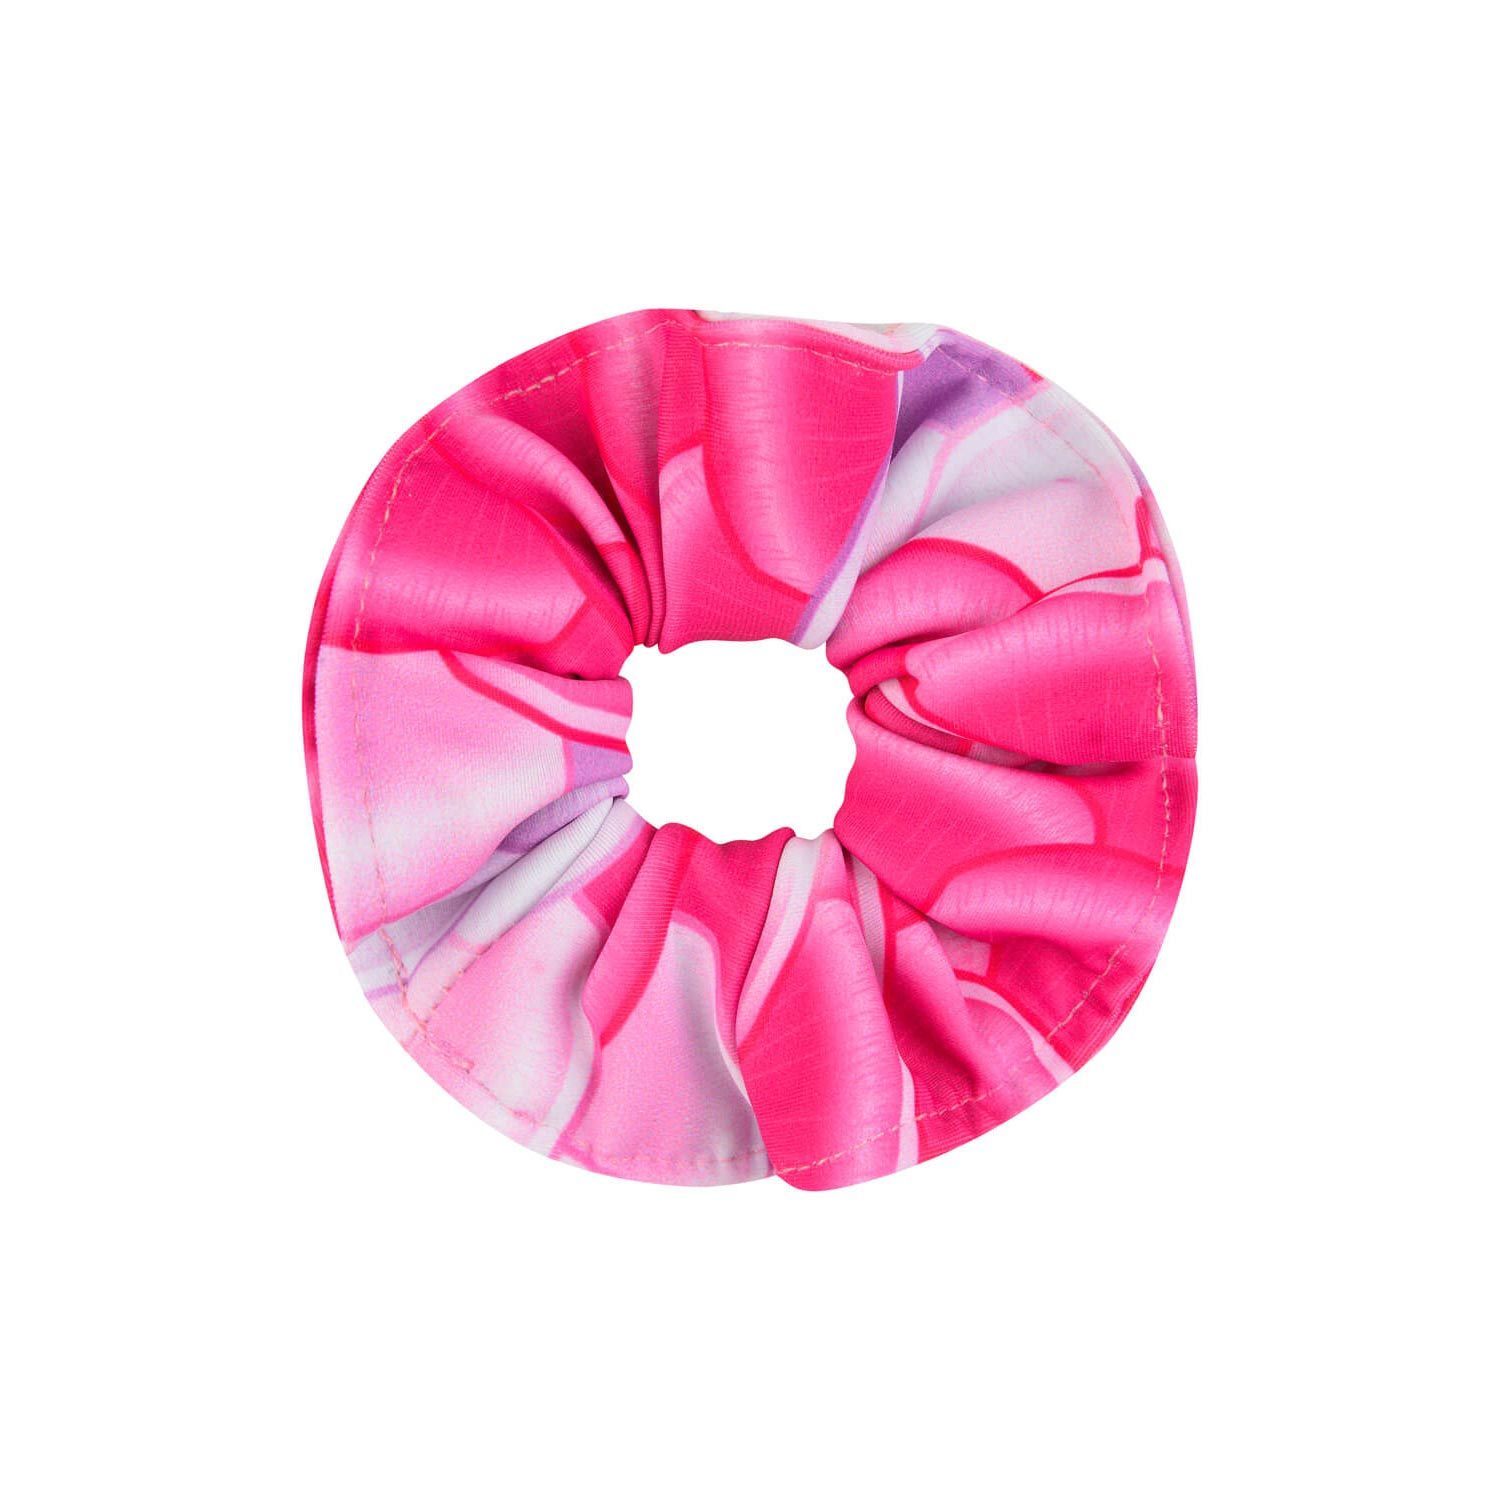 Finsbury Pink Pearl mermaid hair scrunchie